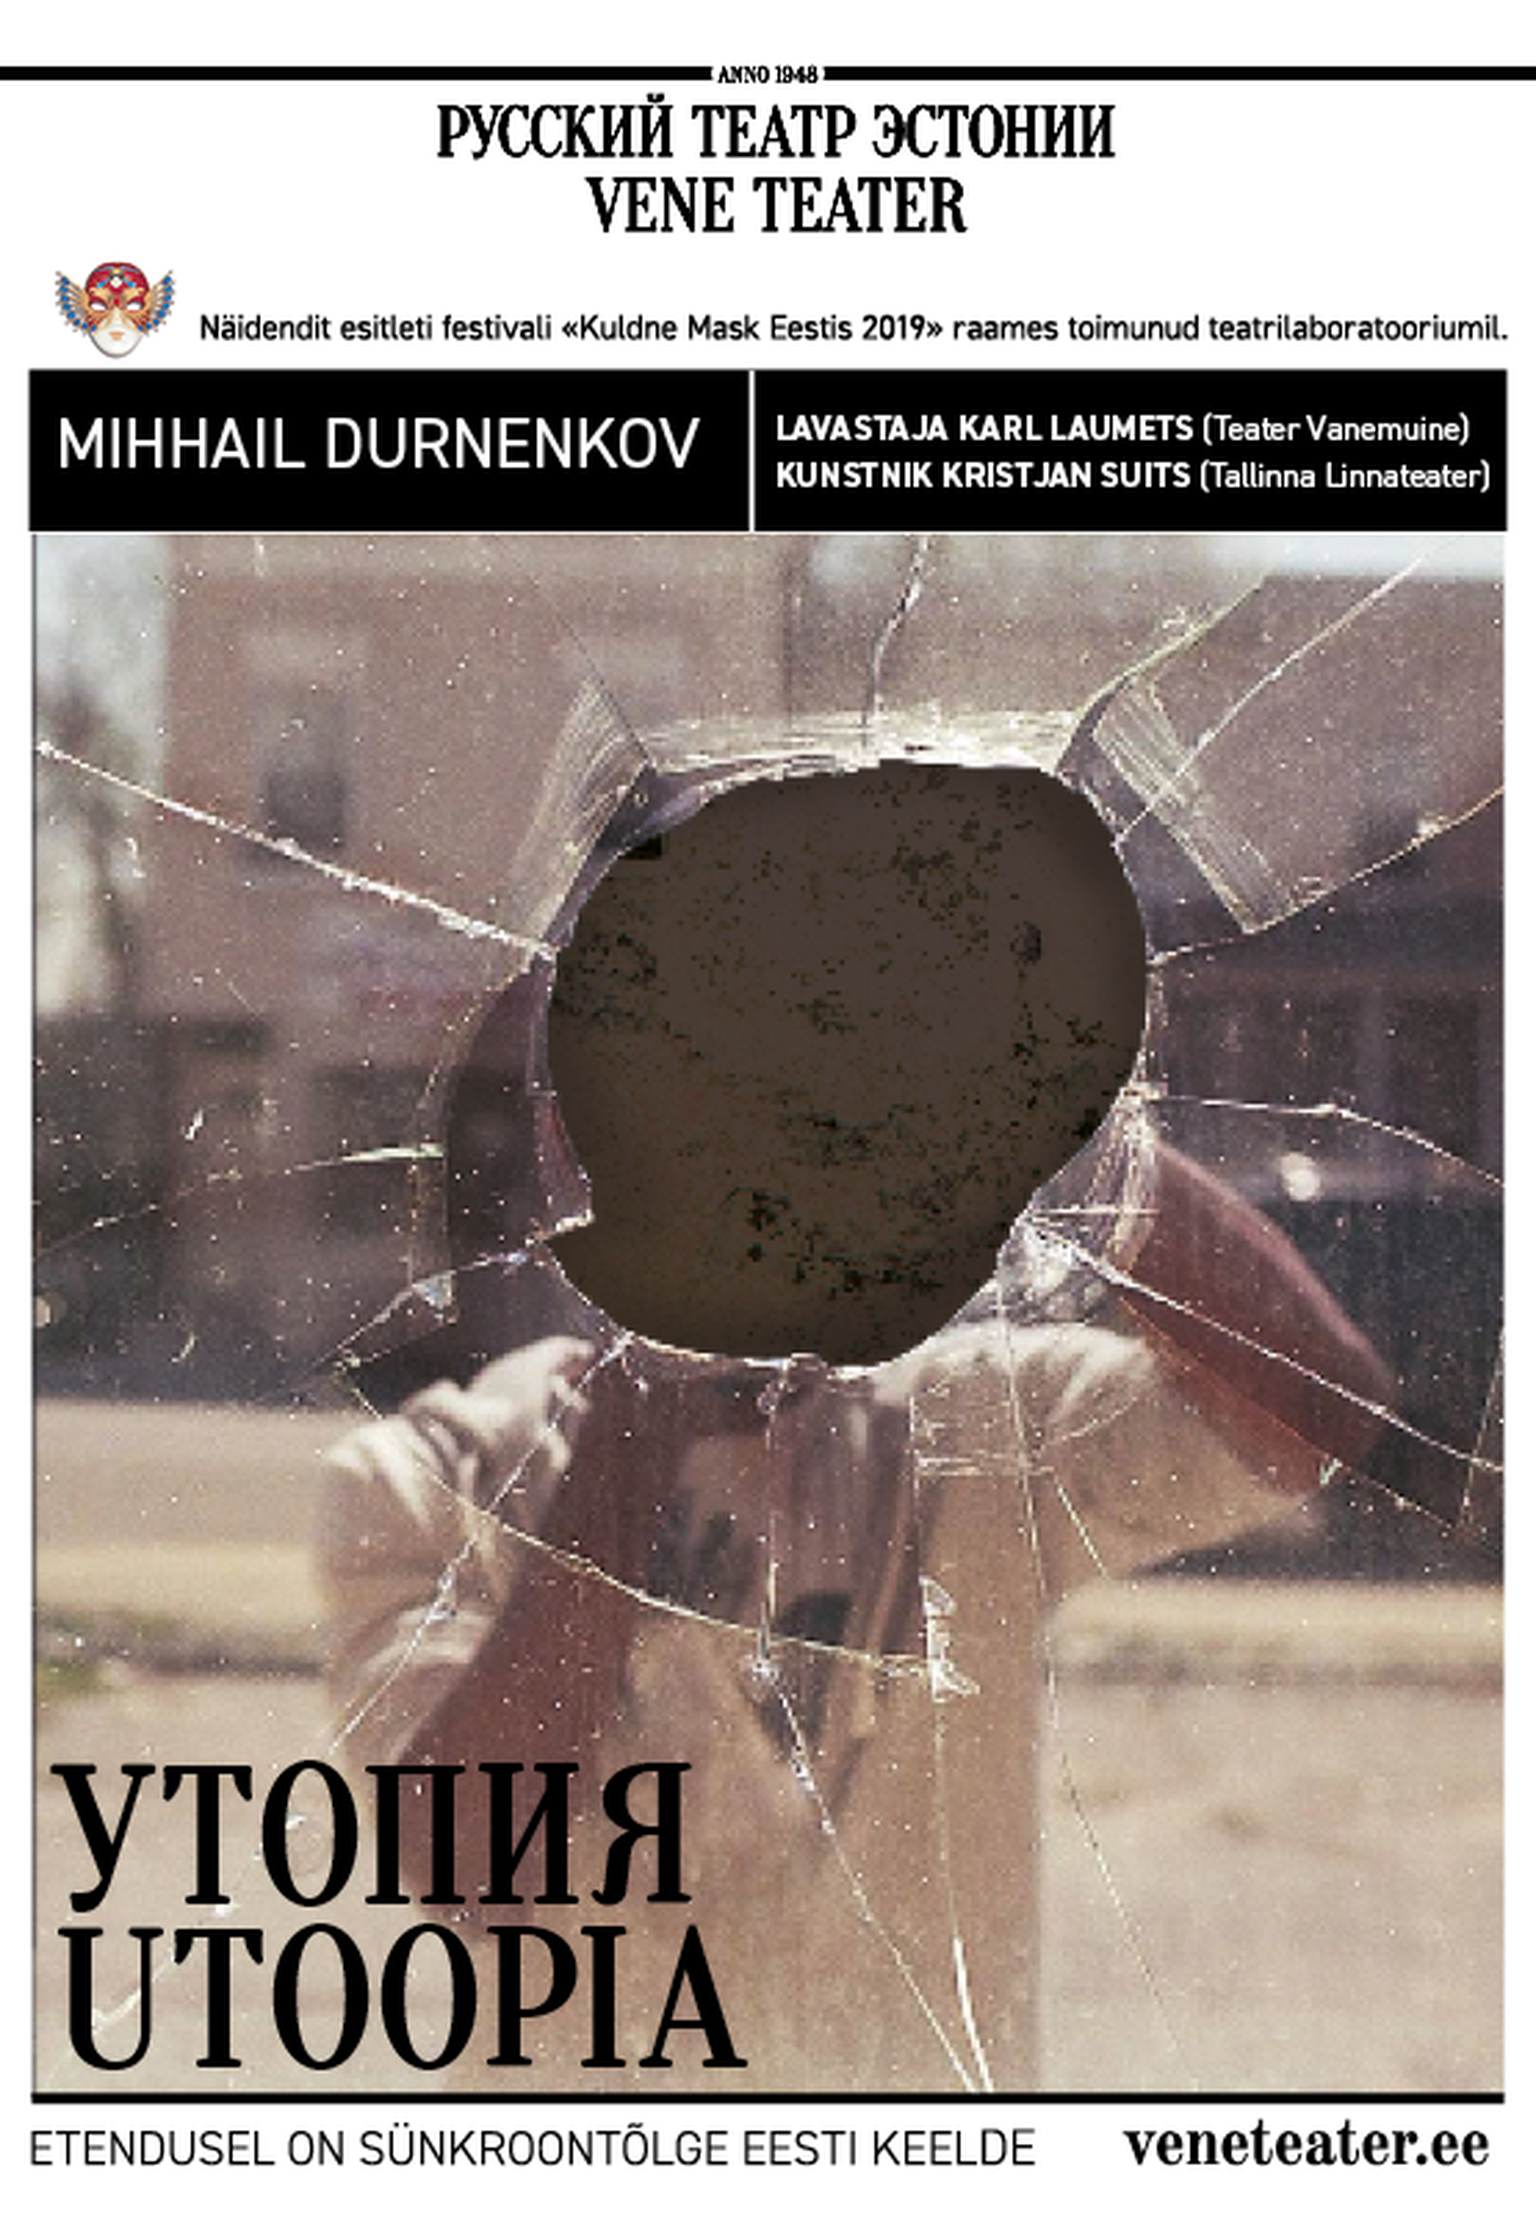 Vene Teatris esietendub «Utoopia» Mihhail Durnenkovi samanimelise näidendi põhjal.